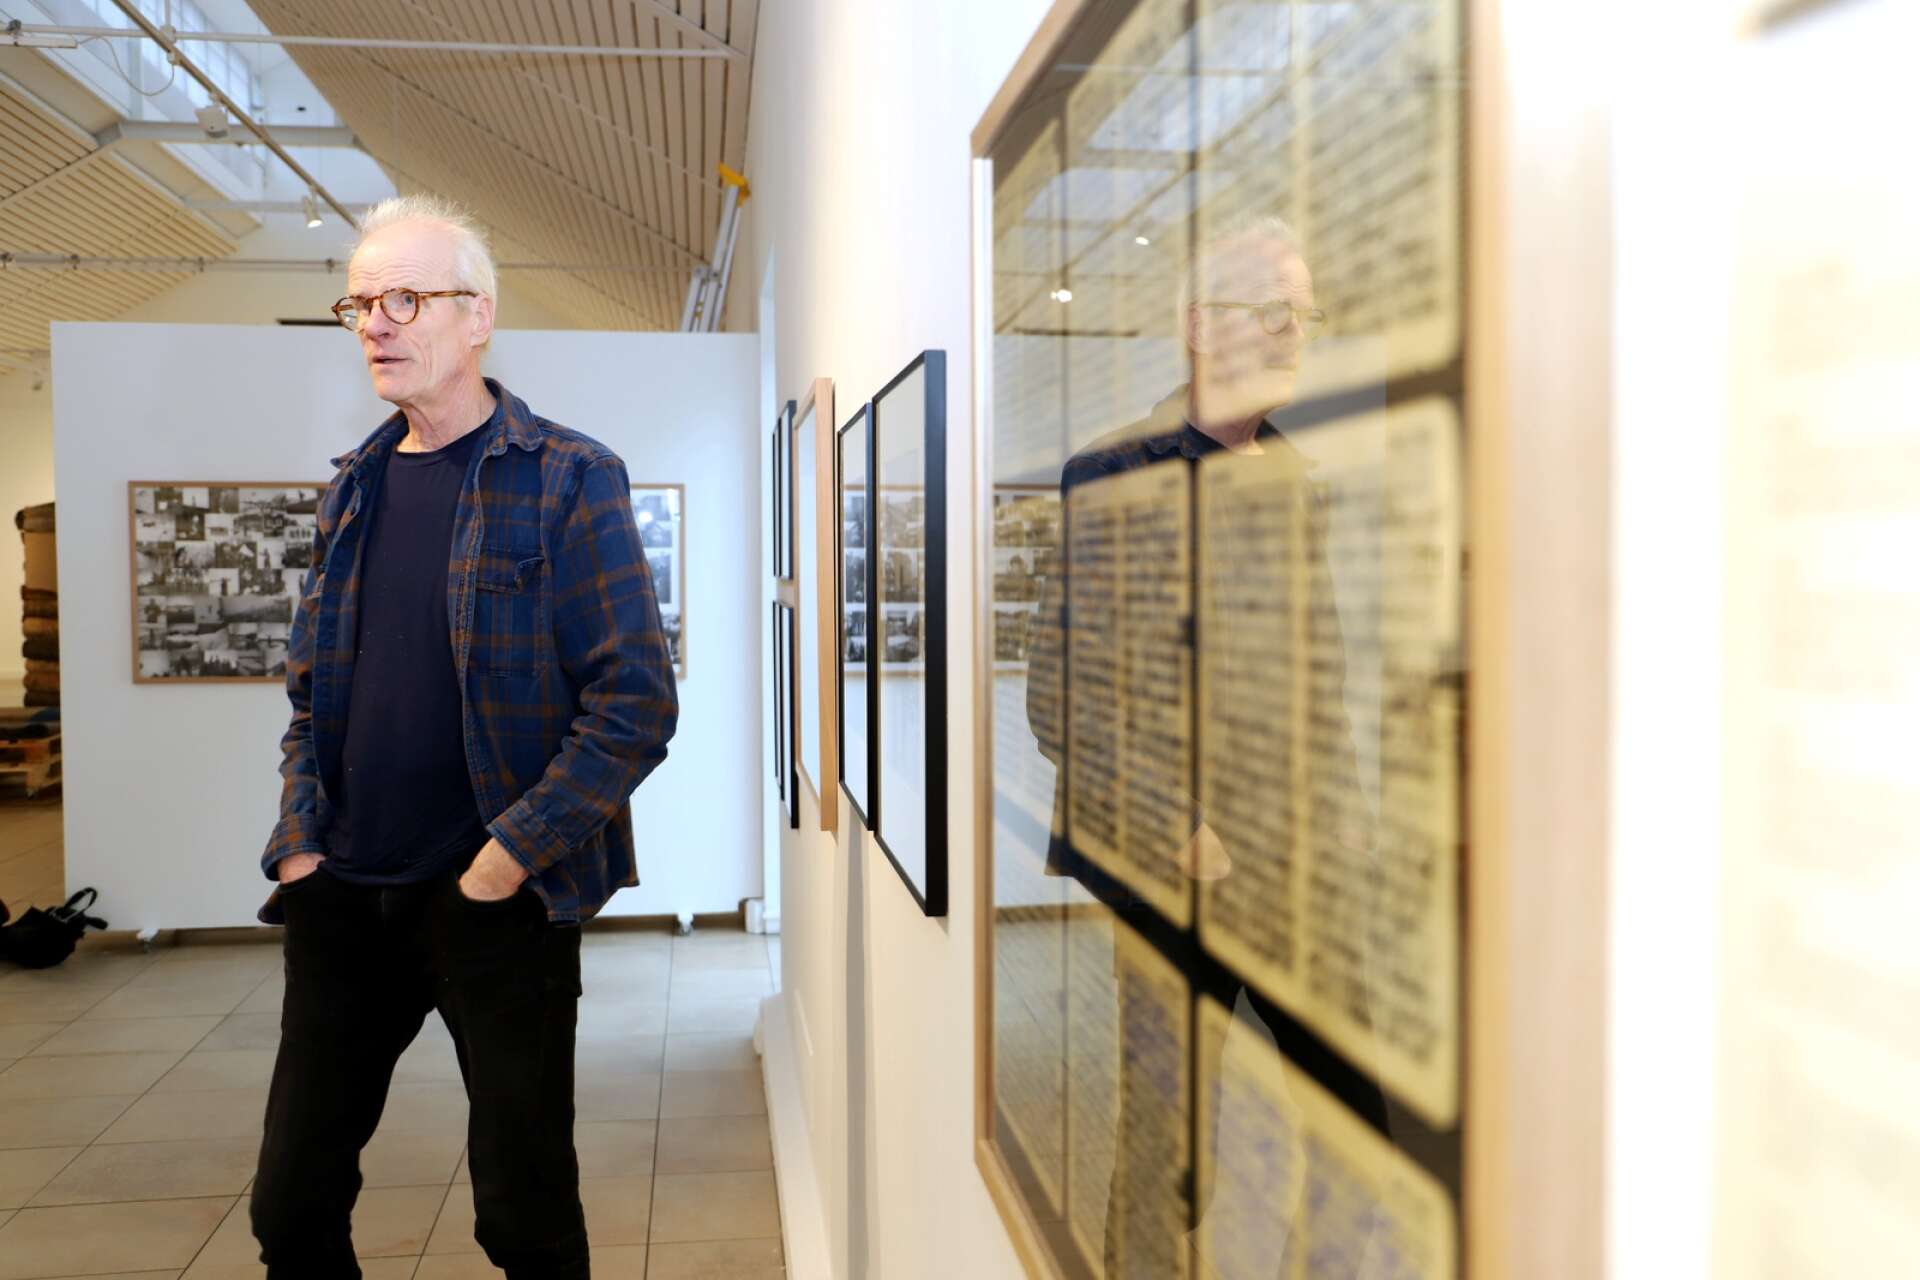 ”Jag tyckte att jag fick en kompis”, säger Staffan Jofjell om hur det var att möta sin pappa genom hans dagböcker och bilder från krigsåren vid norsk-svenska gränsen.